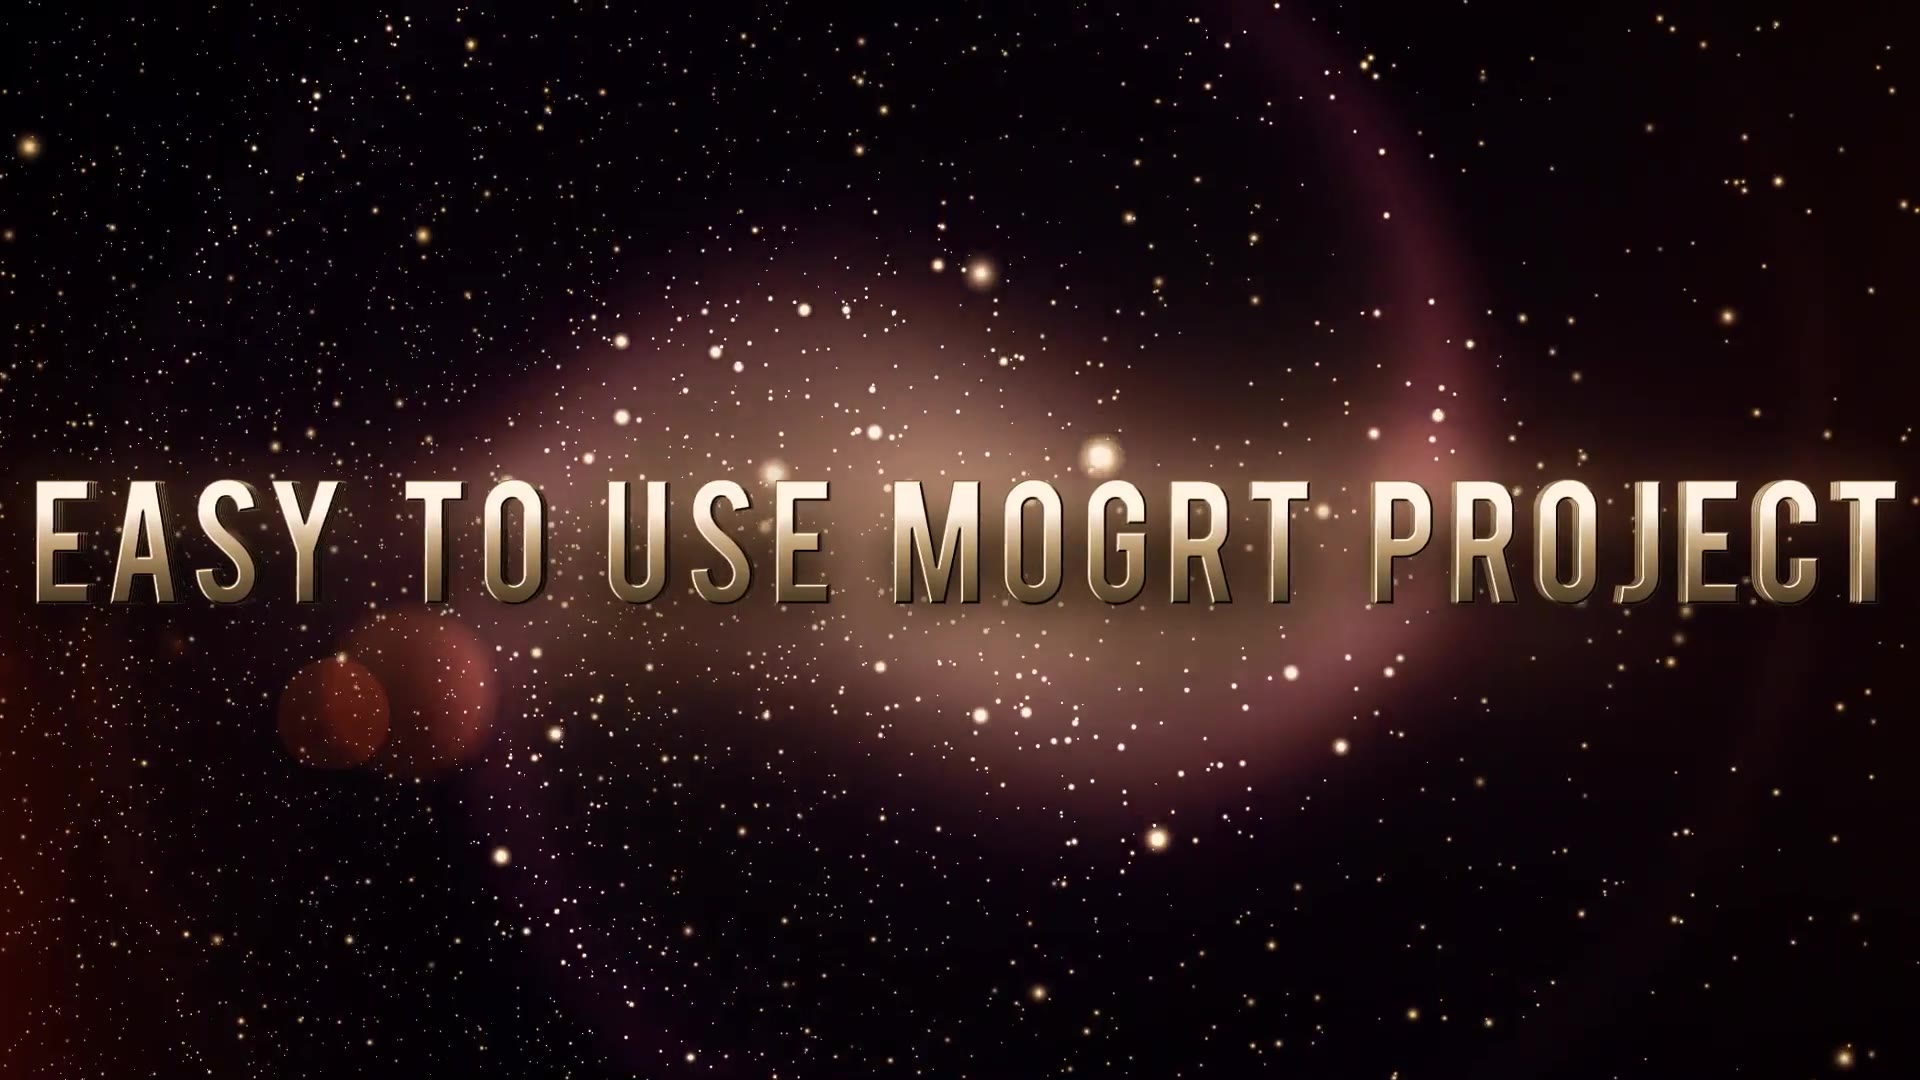 Retro Epic Trailer (Mogrt) Videohive 26354360 Premiere Pro Image 5